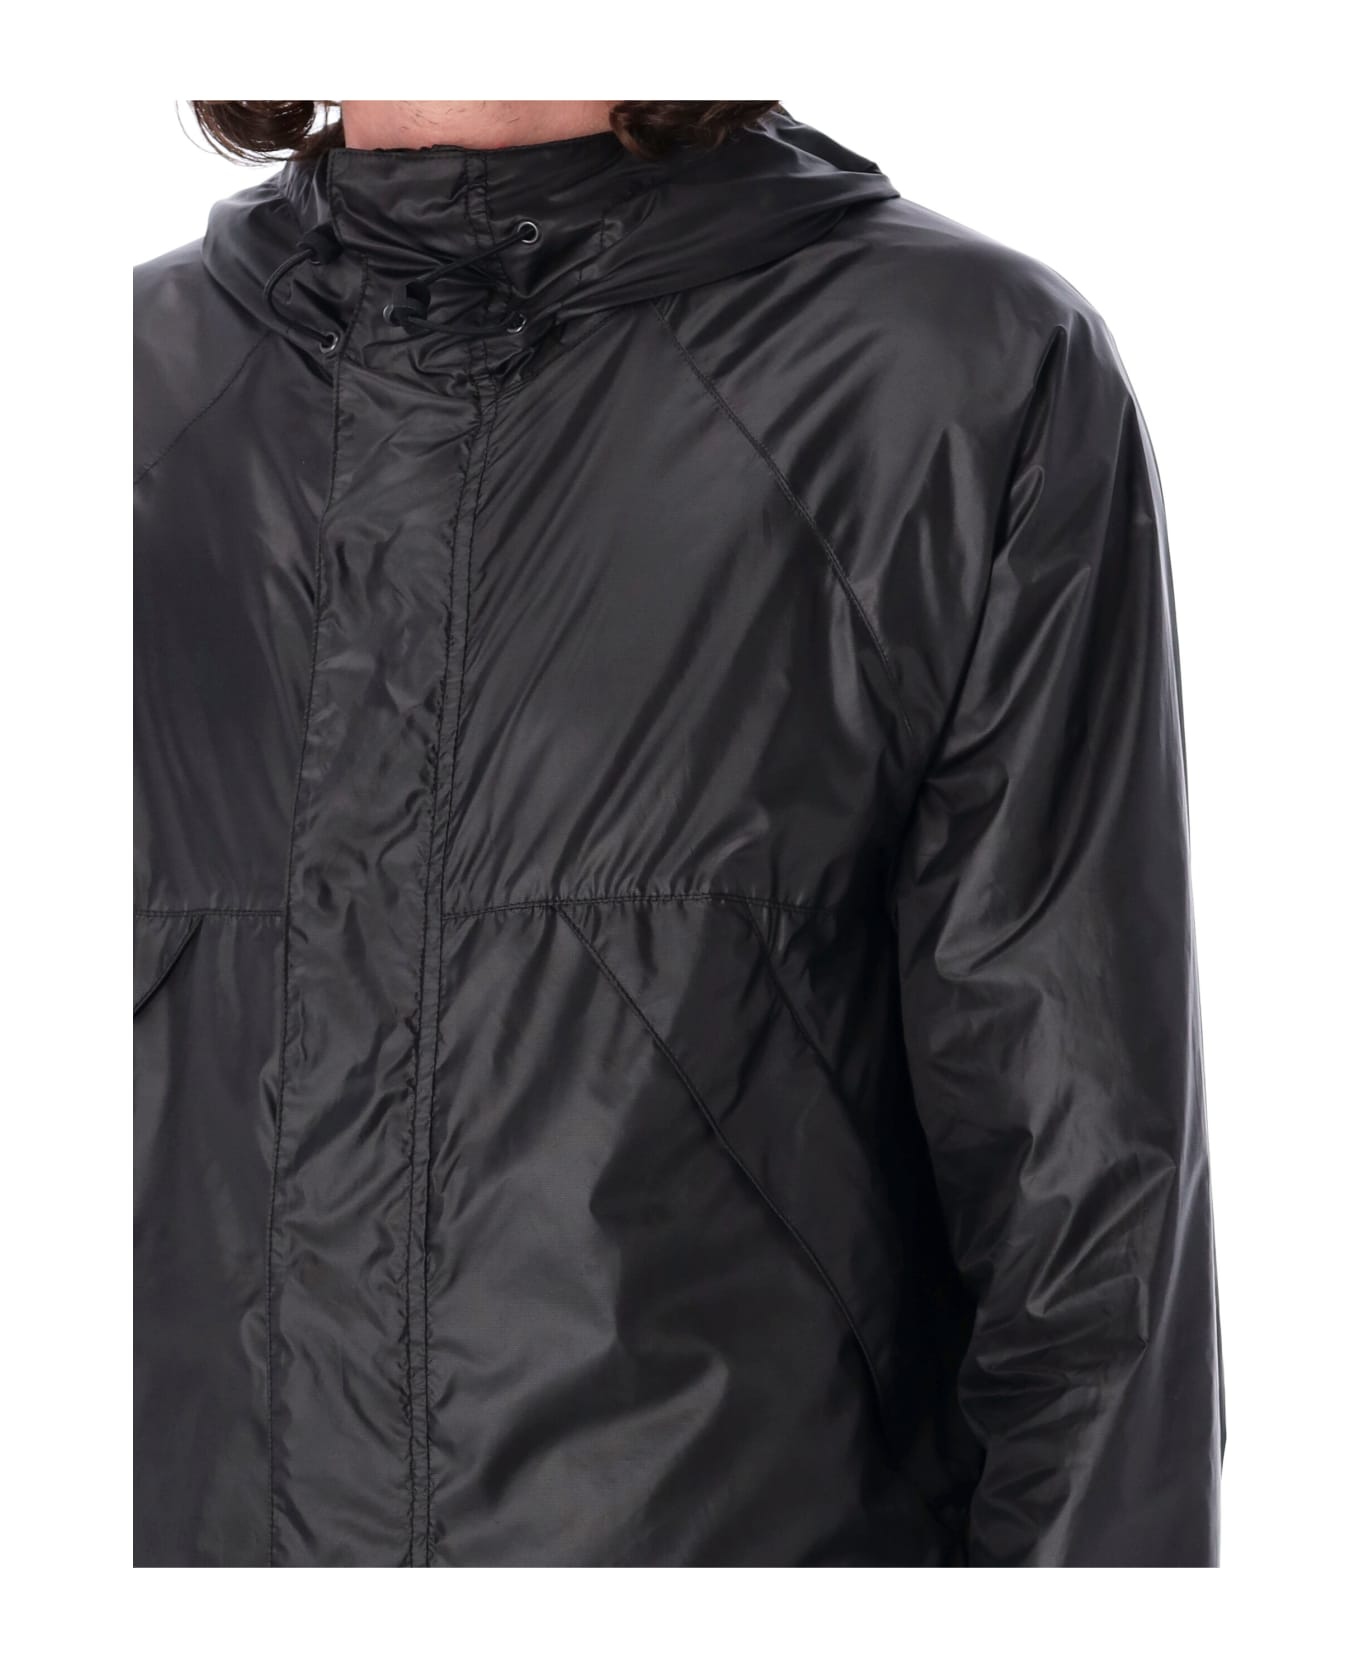 Aspesi Wintermoon Technical Jacket - Black